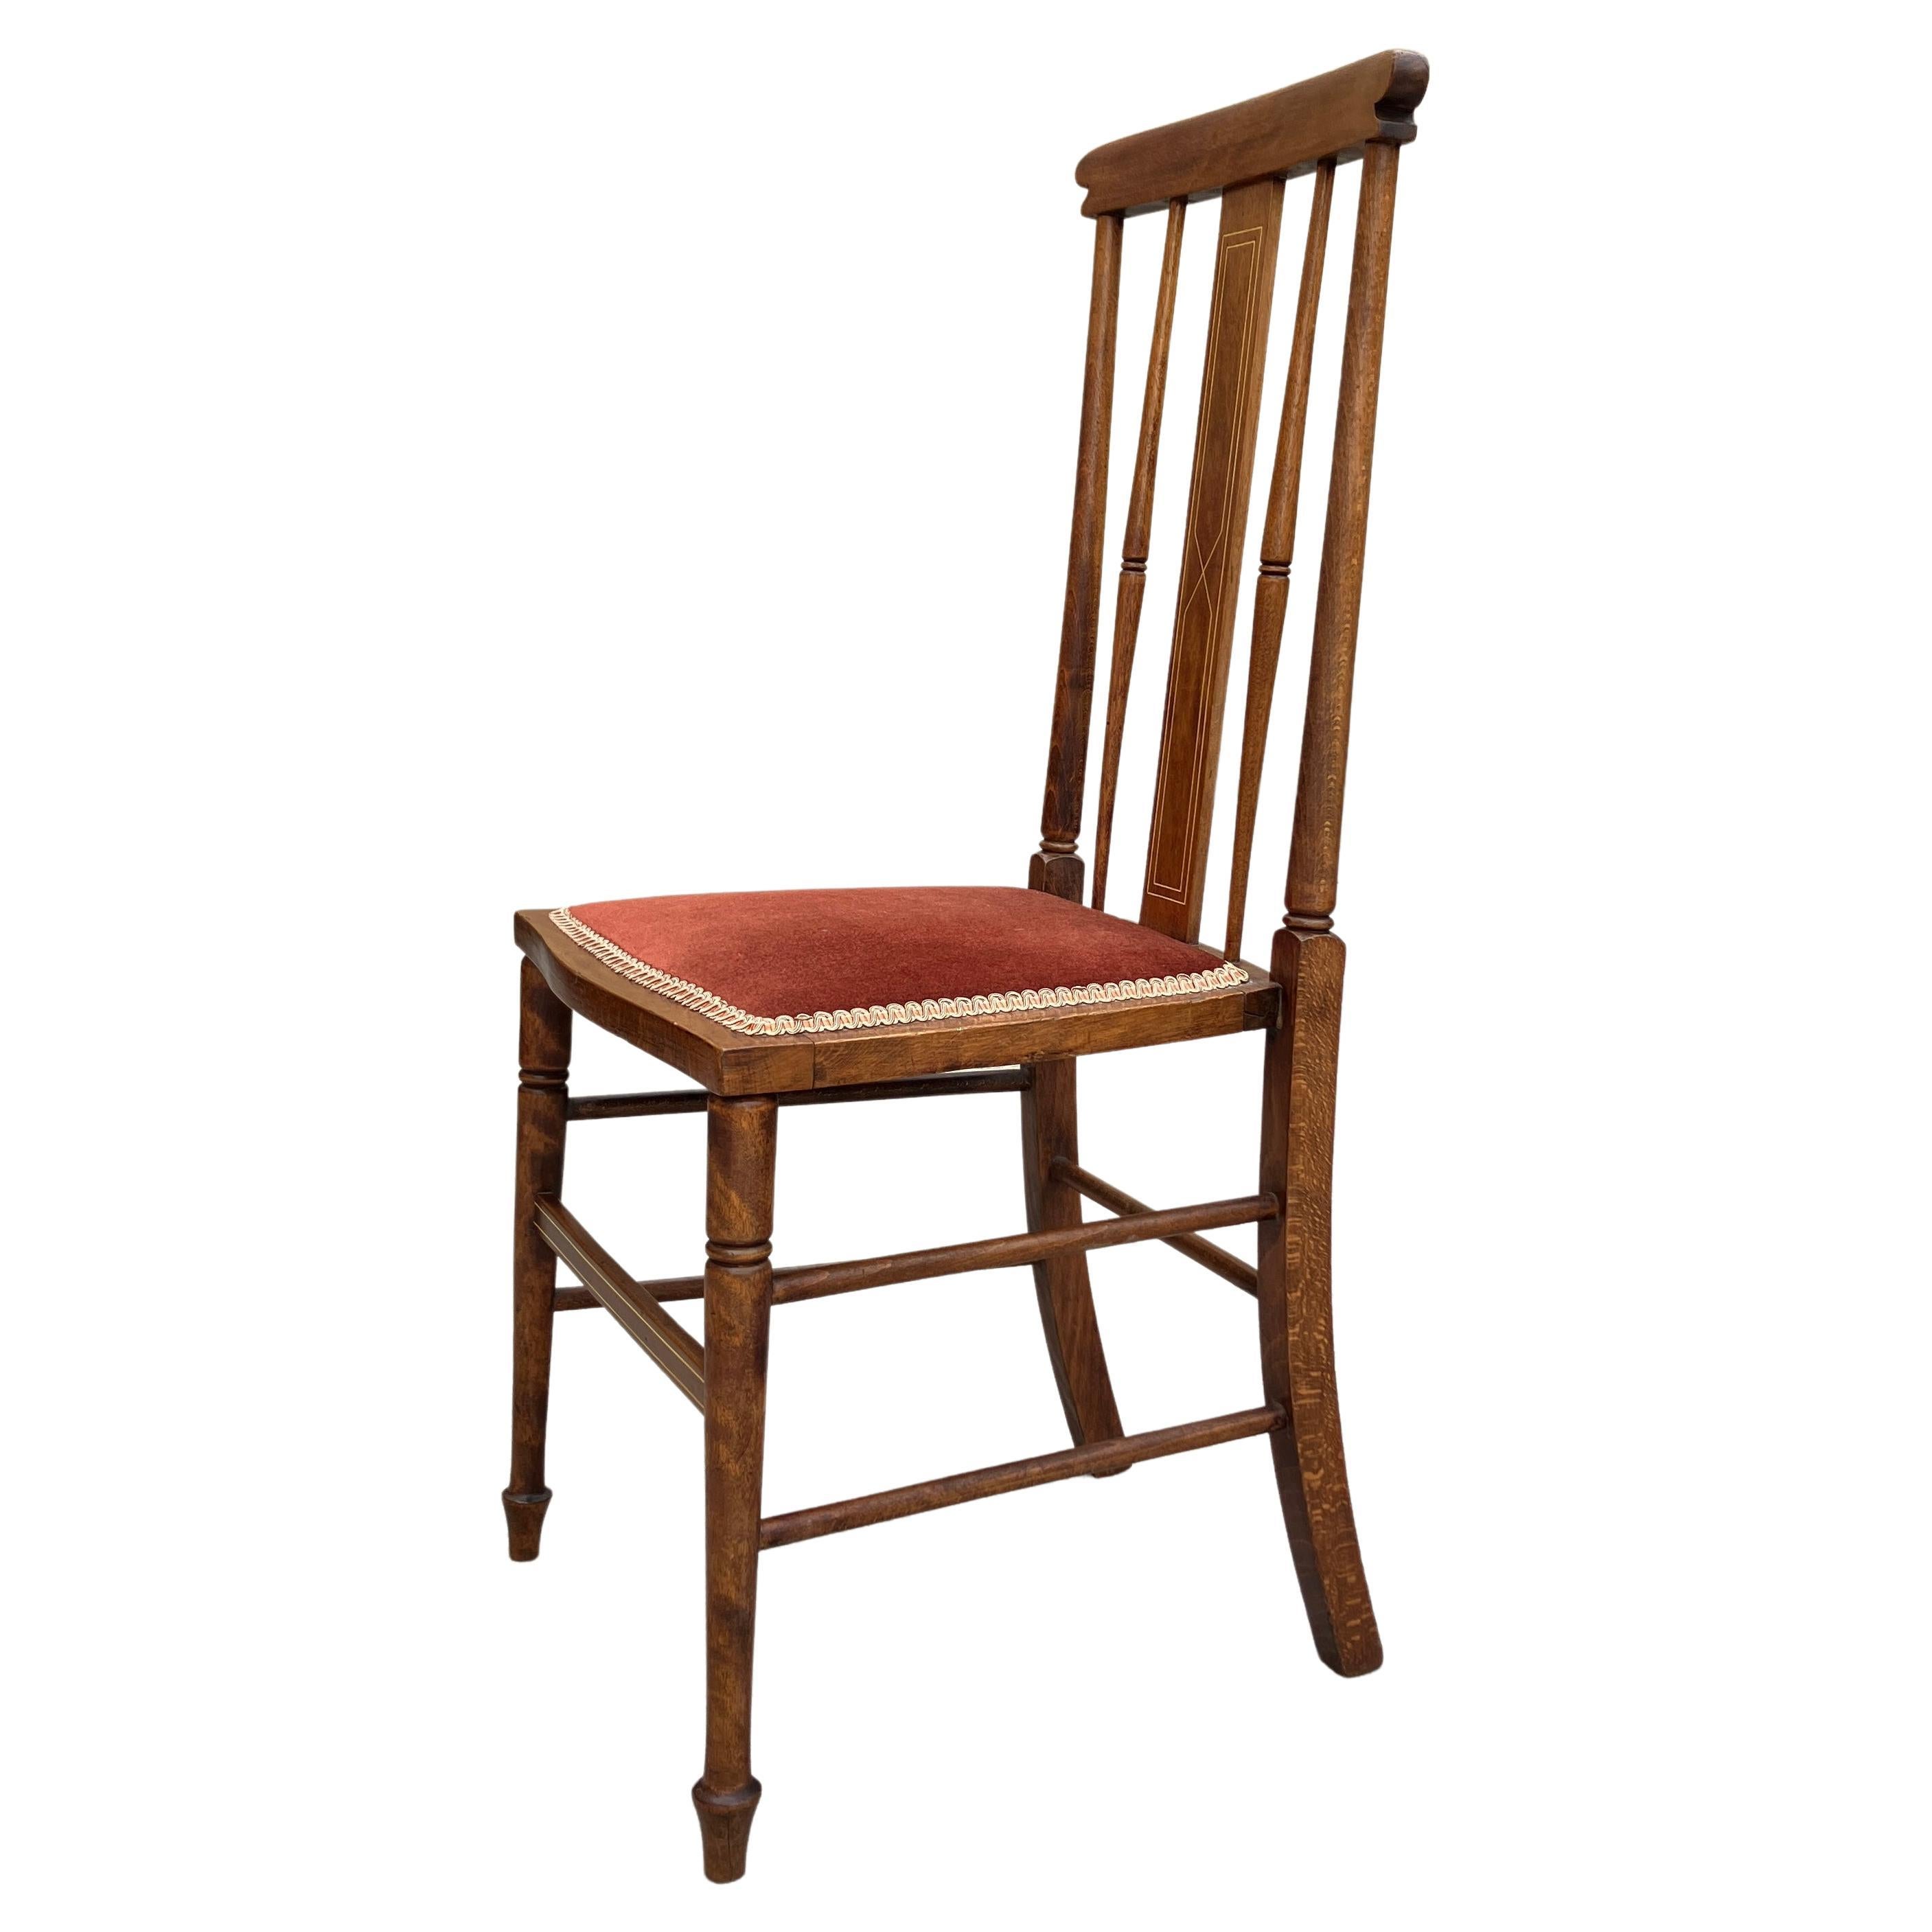 Ein absolut atemberaubender Arts & Crafts Stuhl mit Spindelrücken aus den frühen 1900er Jahren. Hergestellt in England. Der Stuhl hat zierliche Beine und geformte Spindeln an der dekorativen Rückenlehne. Die Rückenlehne des Stuhls ist hoch und